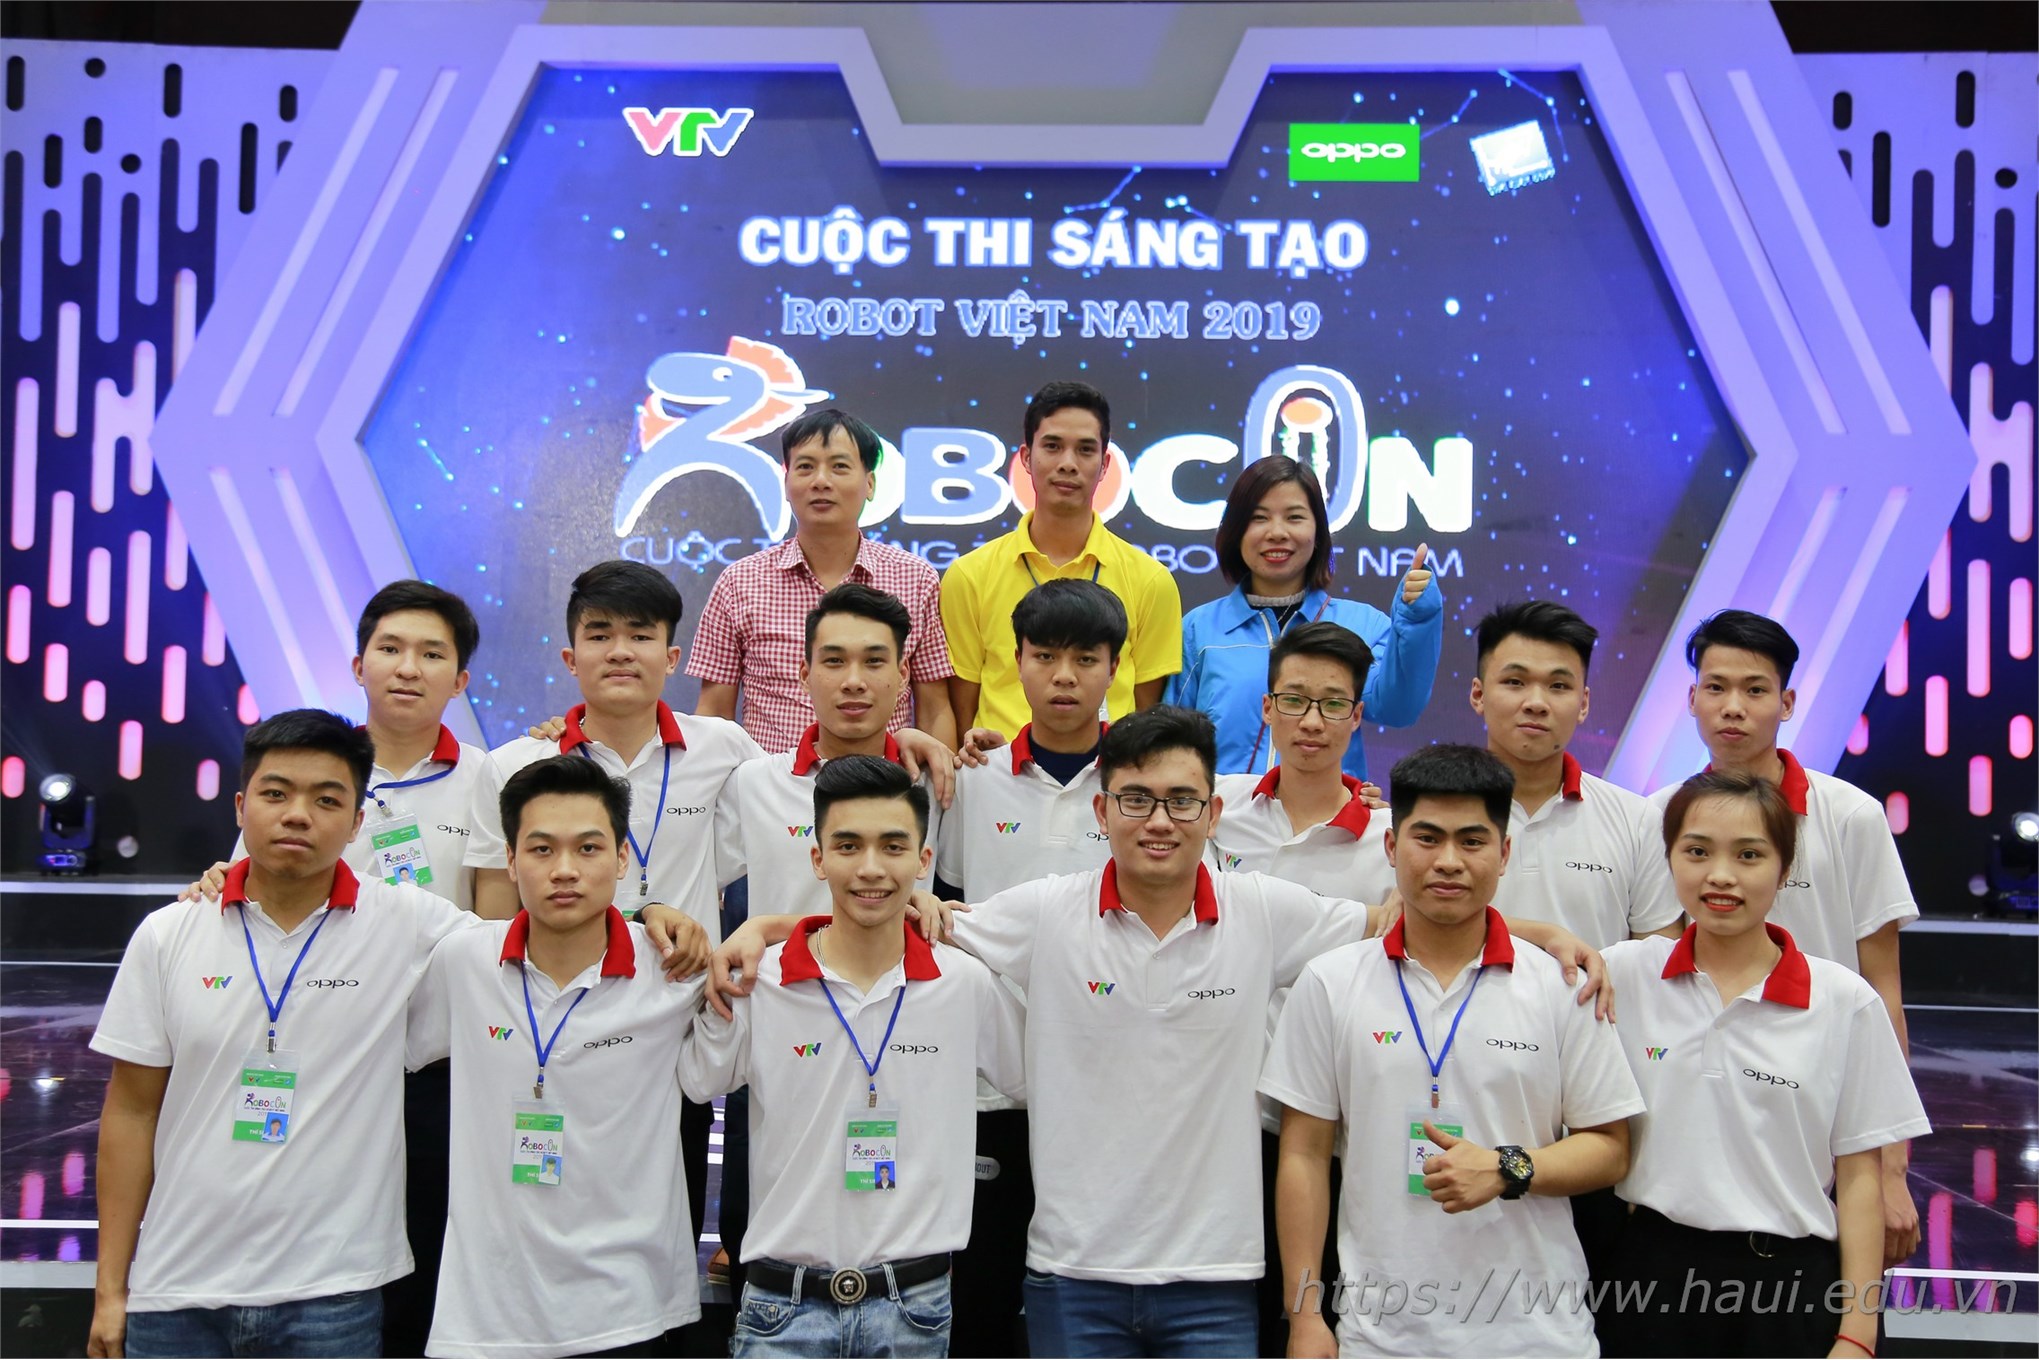 05 đội tuyển Robocon ĐHCNHN toàn thắng tại cuộc thi sáng tạo Robot Việt Nam năm 2019 - khu vực phía Bắc